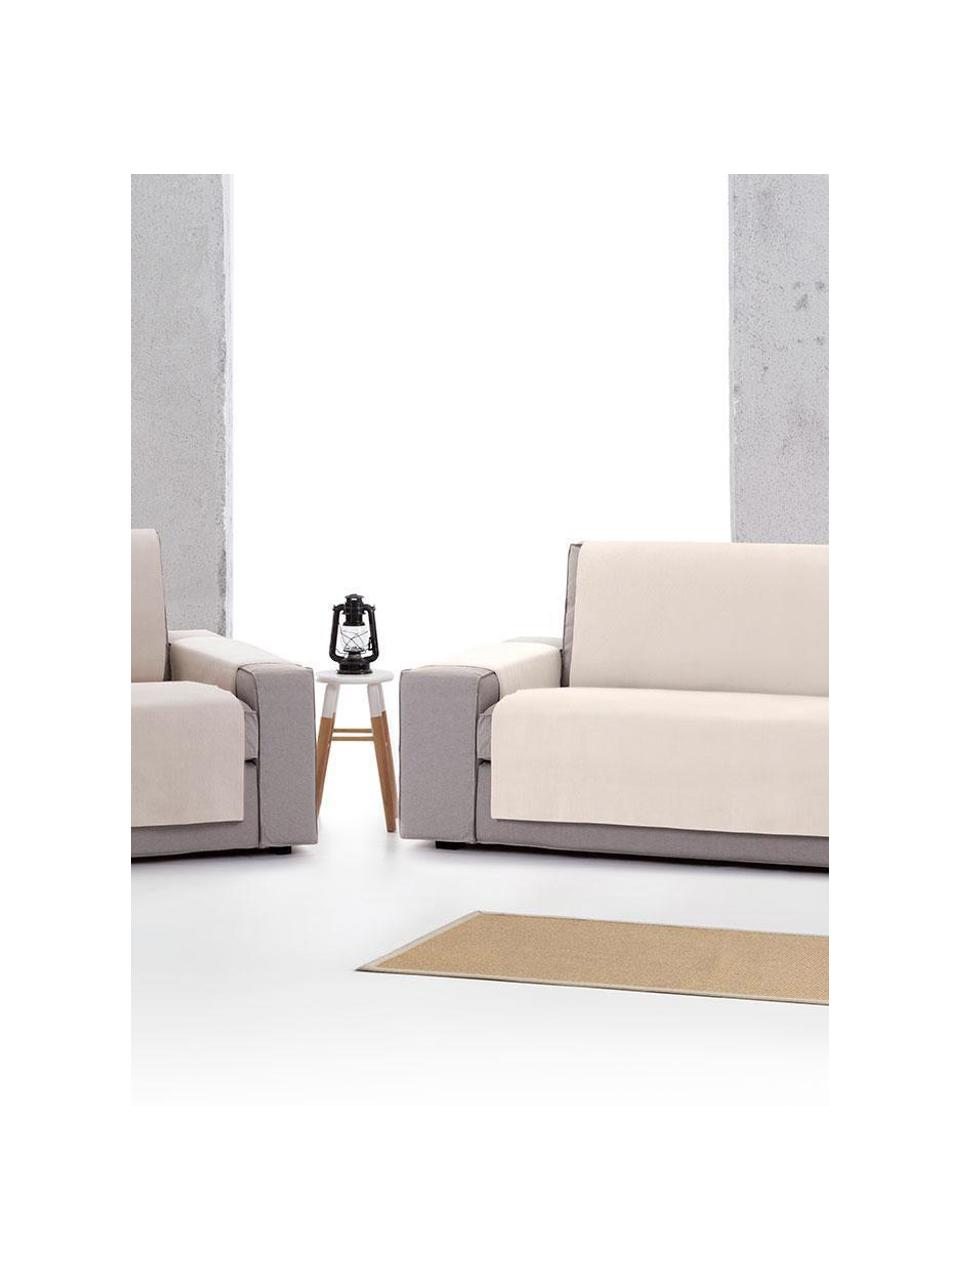 Narzuta na fotel Levante, 65% bawełna, 35% poliester, Szarozielony, S 55 x D 220 cm